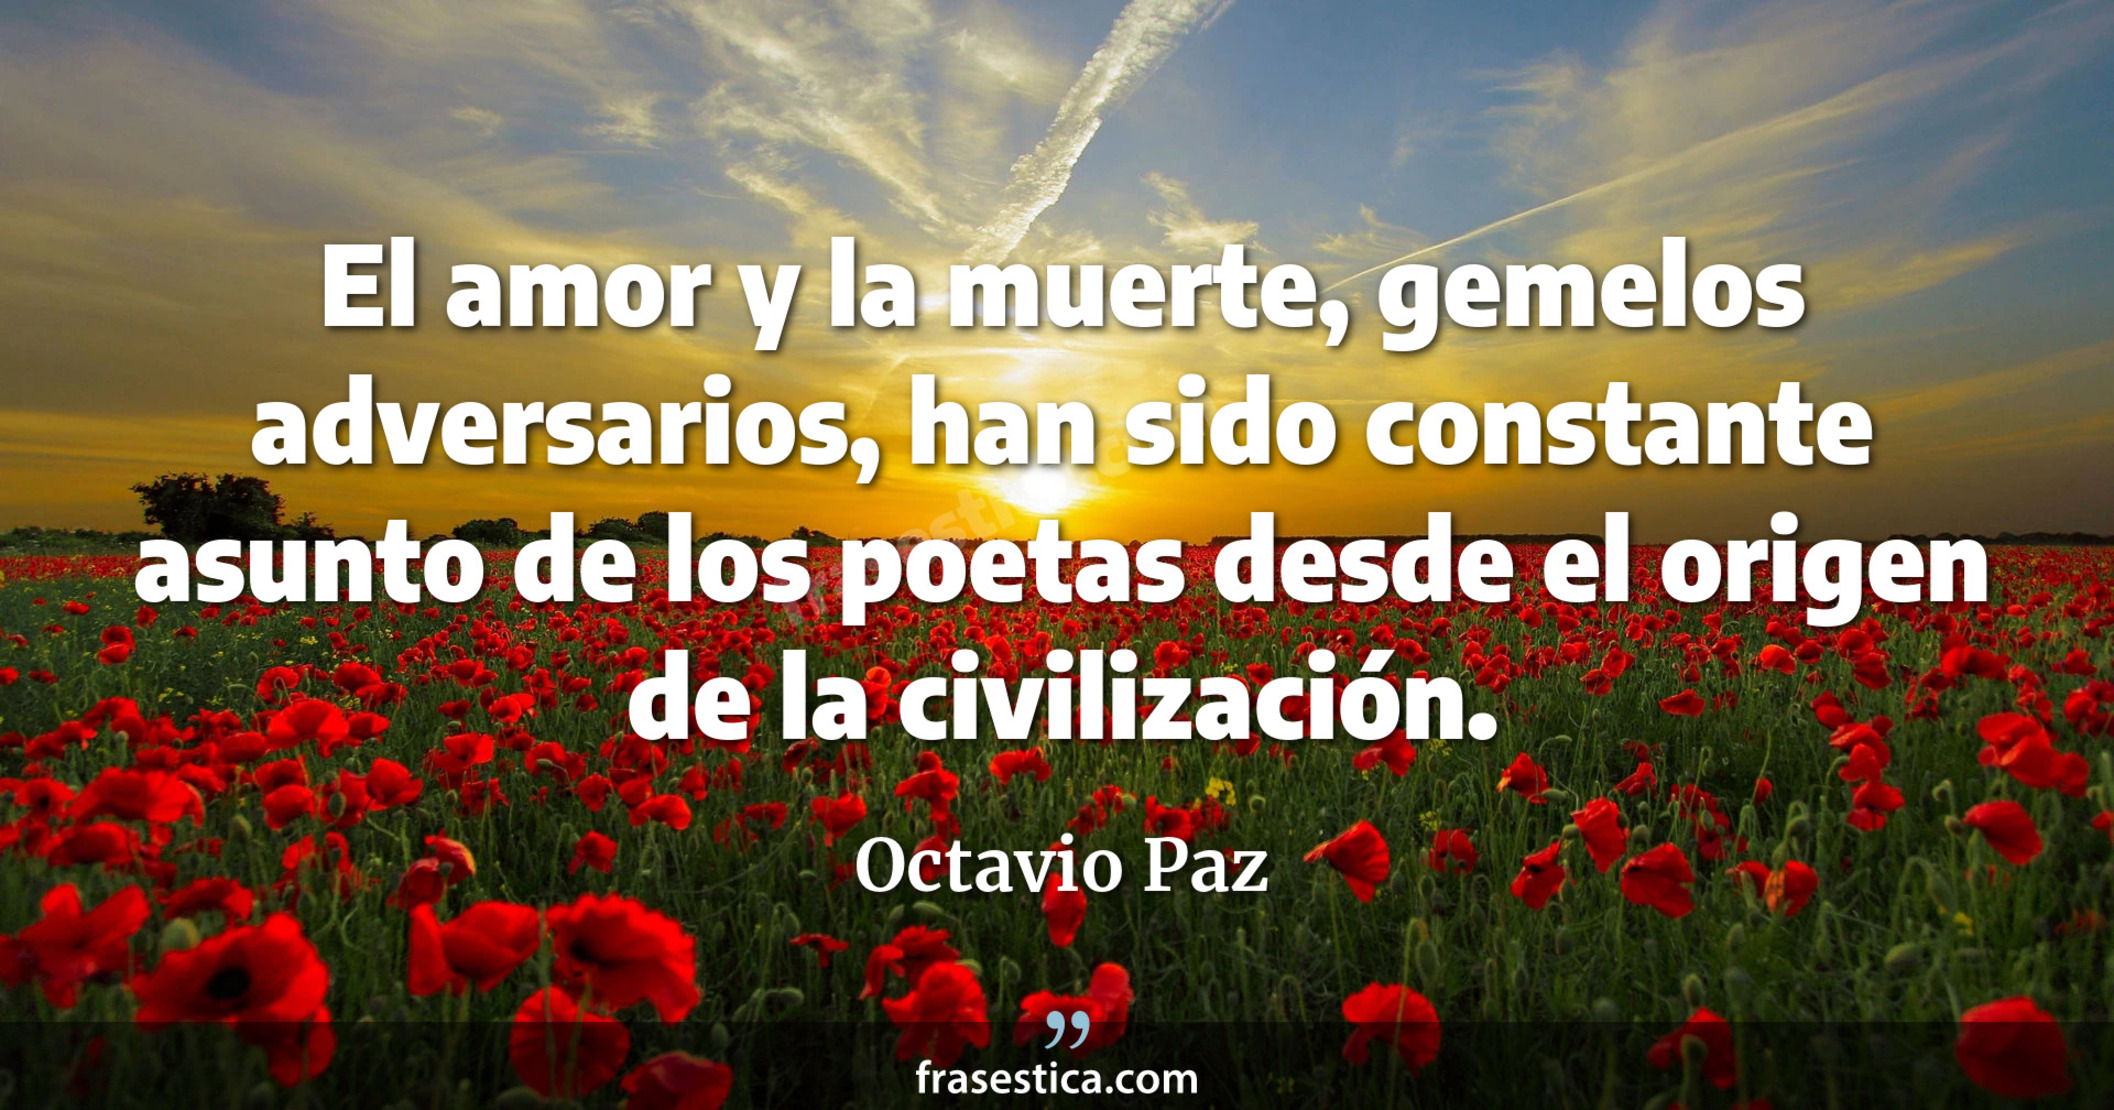 El amor y la muerte, gemelos adversarios, han sido constante asunto de los poetas desde el origen de la civilización. - Octavio Paz